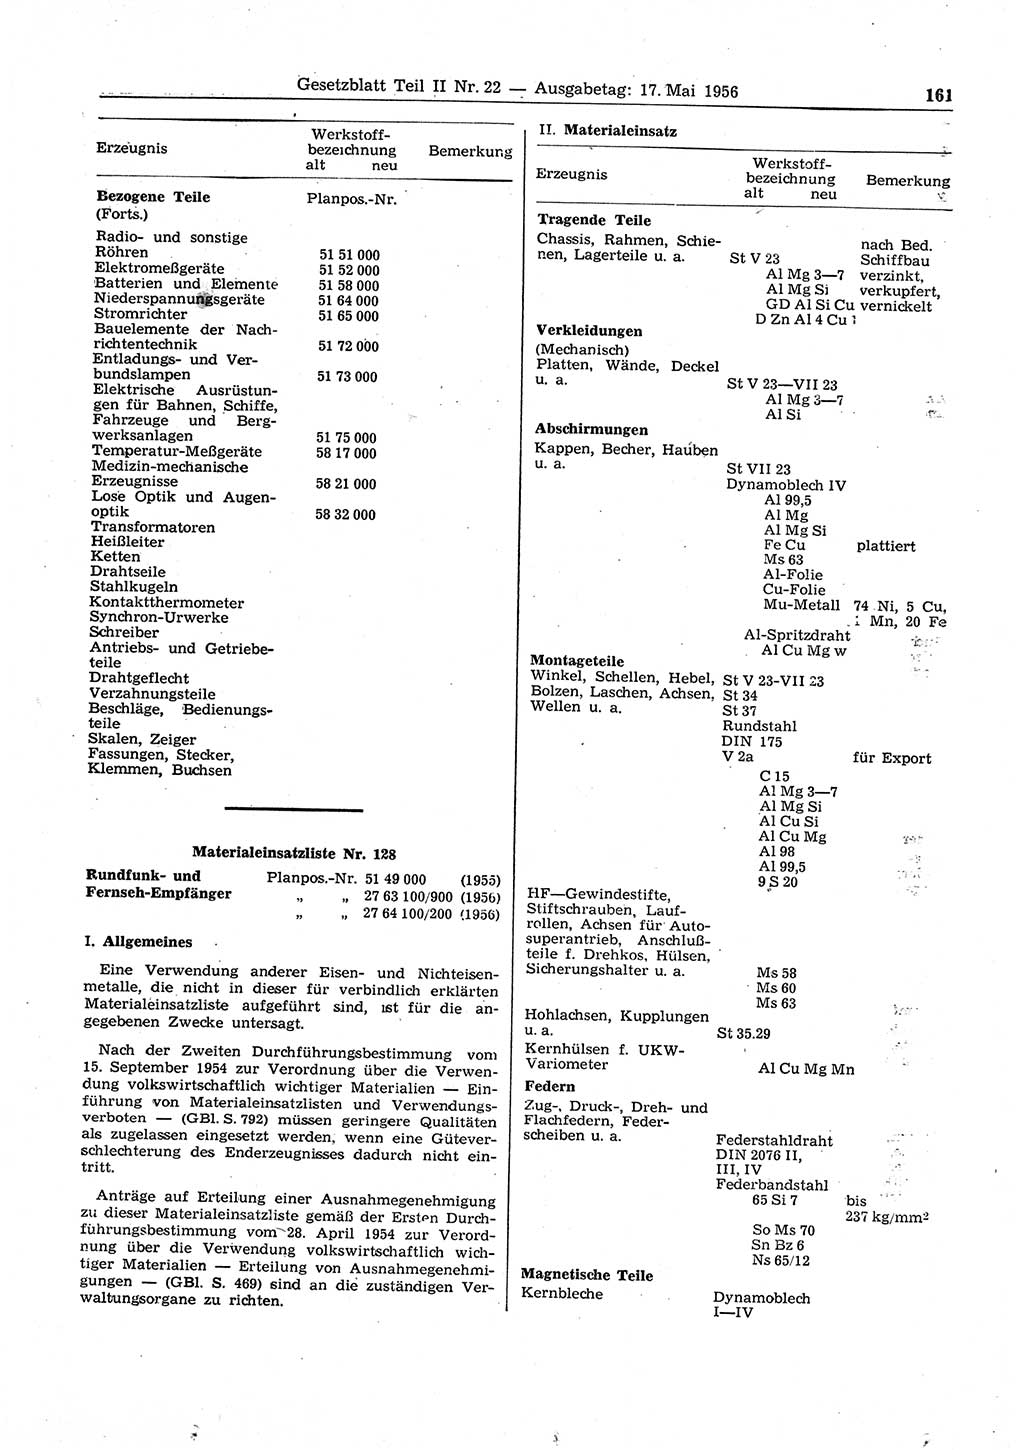 Gesetzblatt (GBl.) der Deutschen Demokratischen Republik (DDR) Teil ⅠⅠ 1956, Seite 161 (GBl. DDR ⅠⅠ 1956, S. 161)